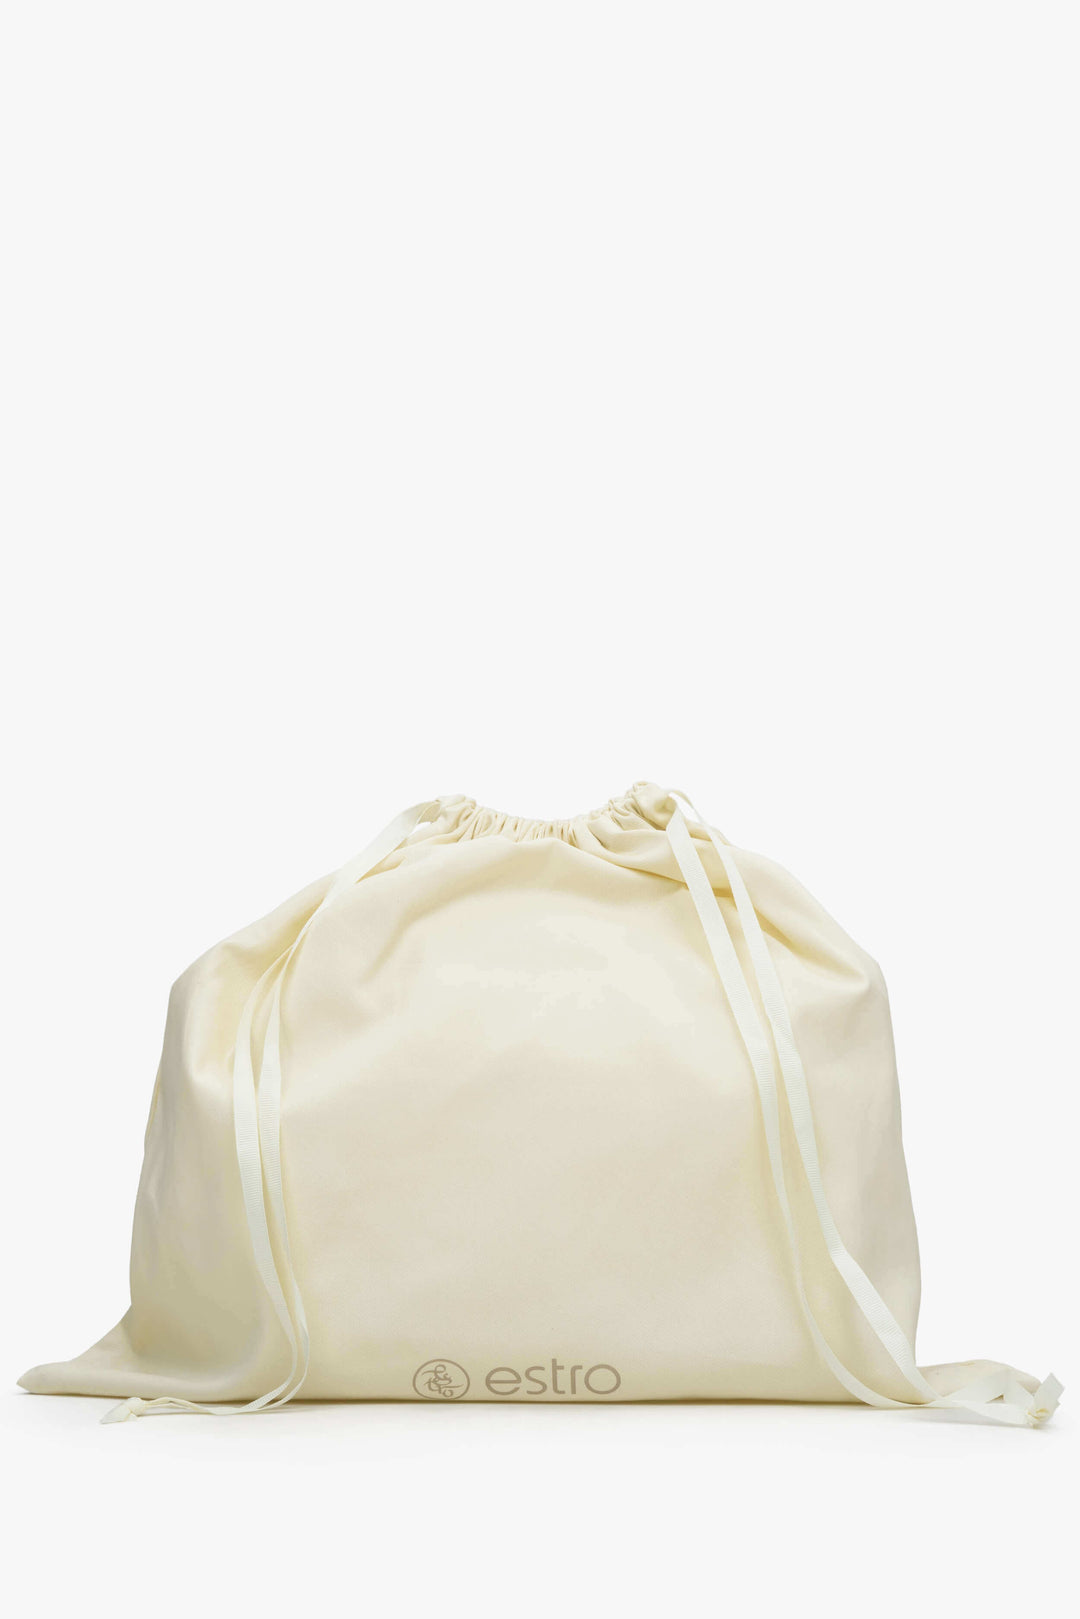 Women's Light Brown Leather Shoulder Bag Estro ER00114419